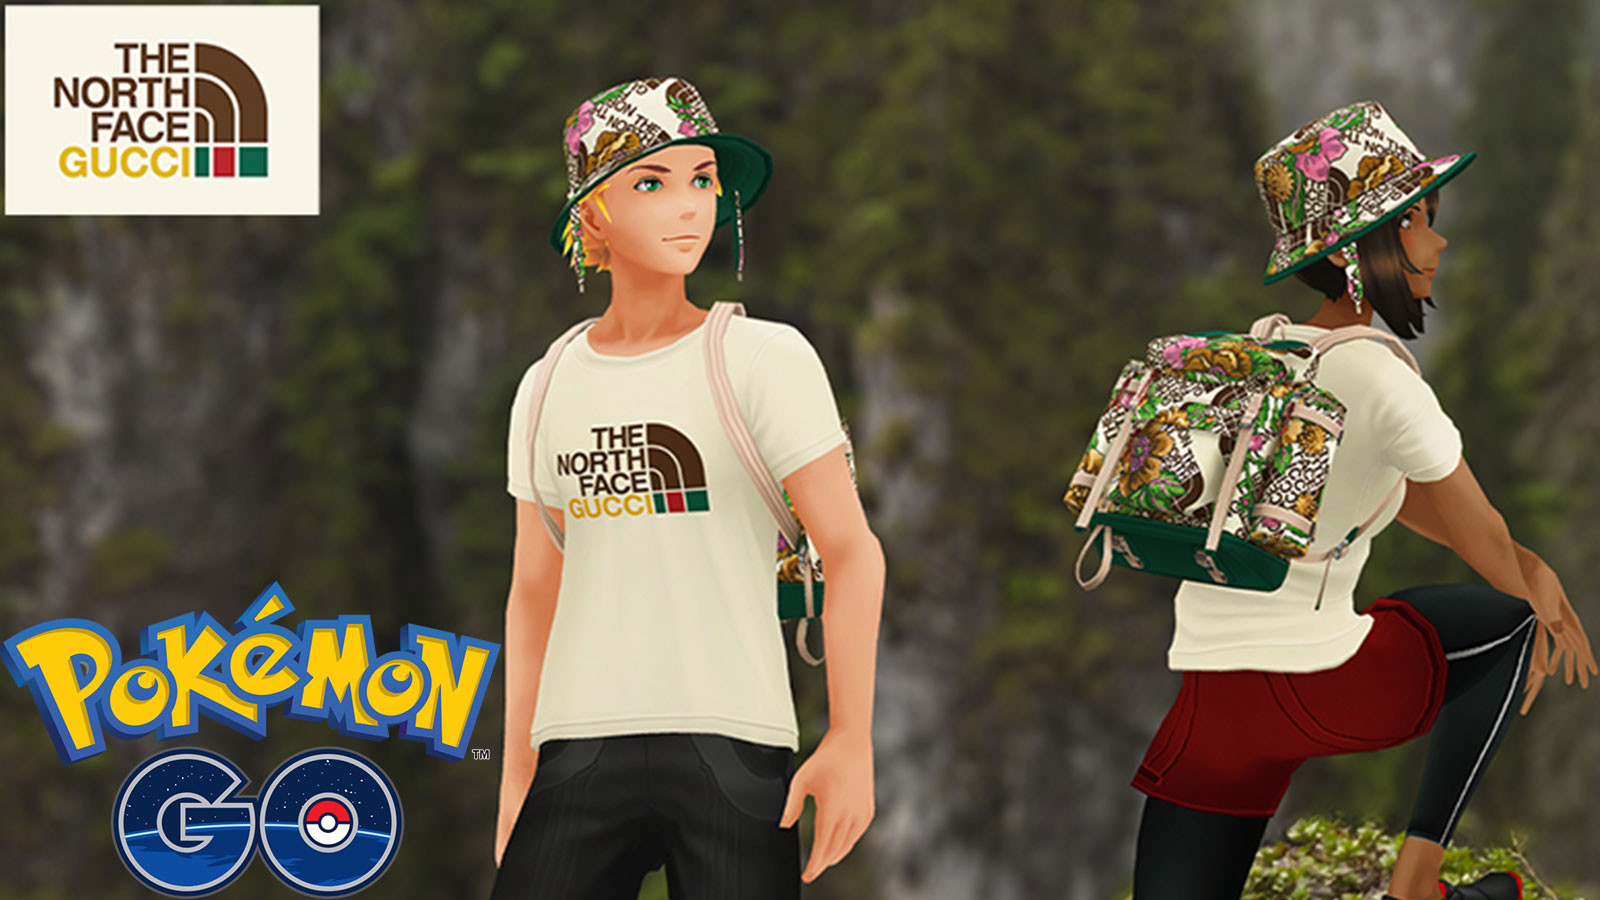 Code Promo Pokémon GO : Obtenez les tenues Gucci et The North Face pour votre avatar